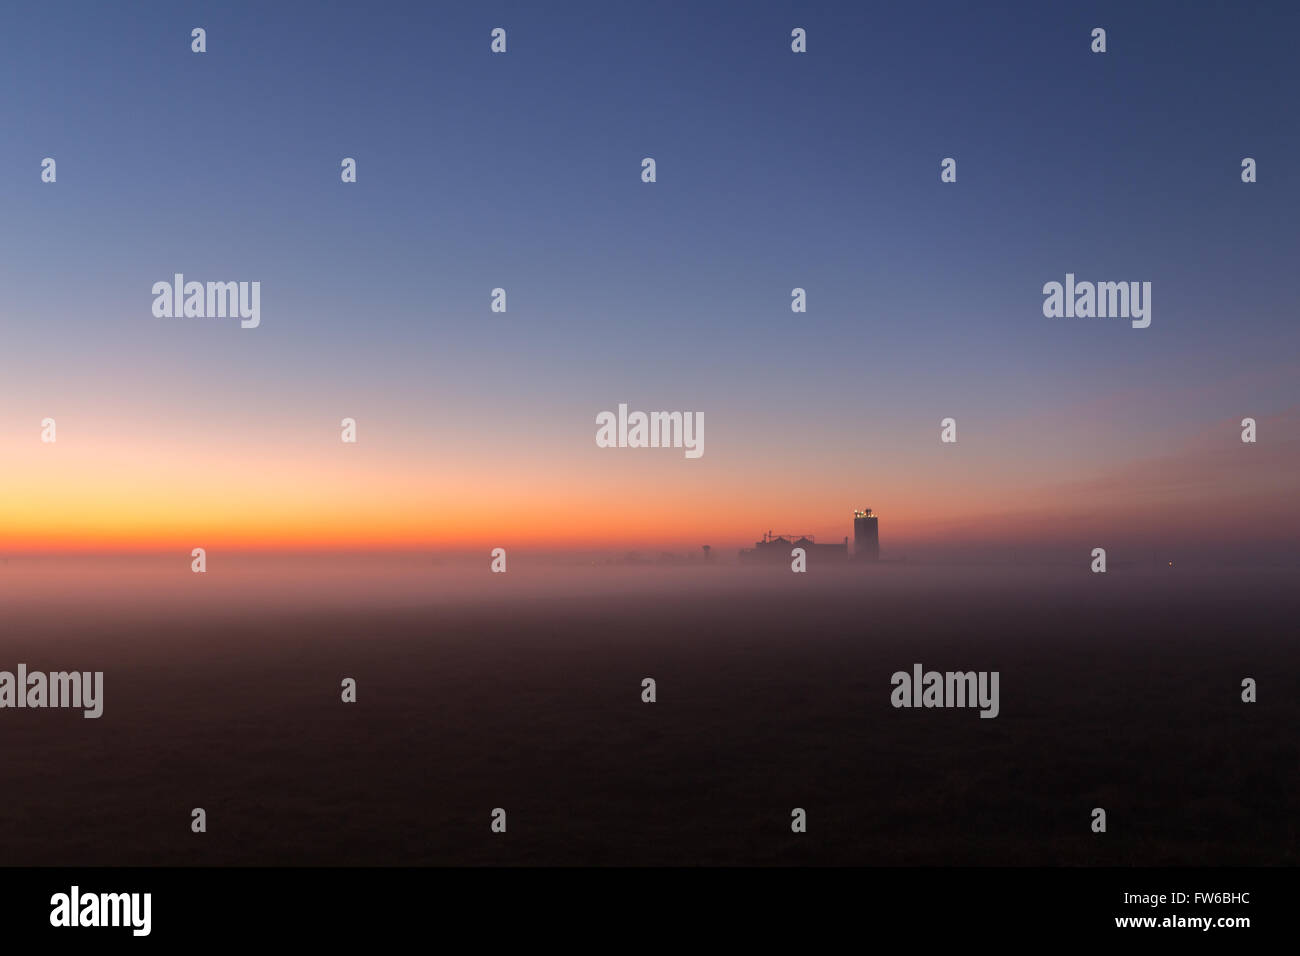 Neblig Industrielandschaft, Silhouette der alten Fabrik gegen den Sonnenuntergang Himmel und Nebel zur blauen Stunde in der Nacht Stockfoto